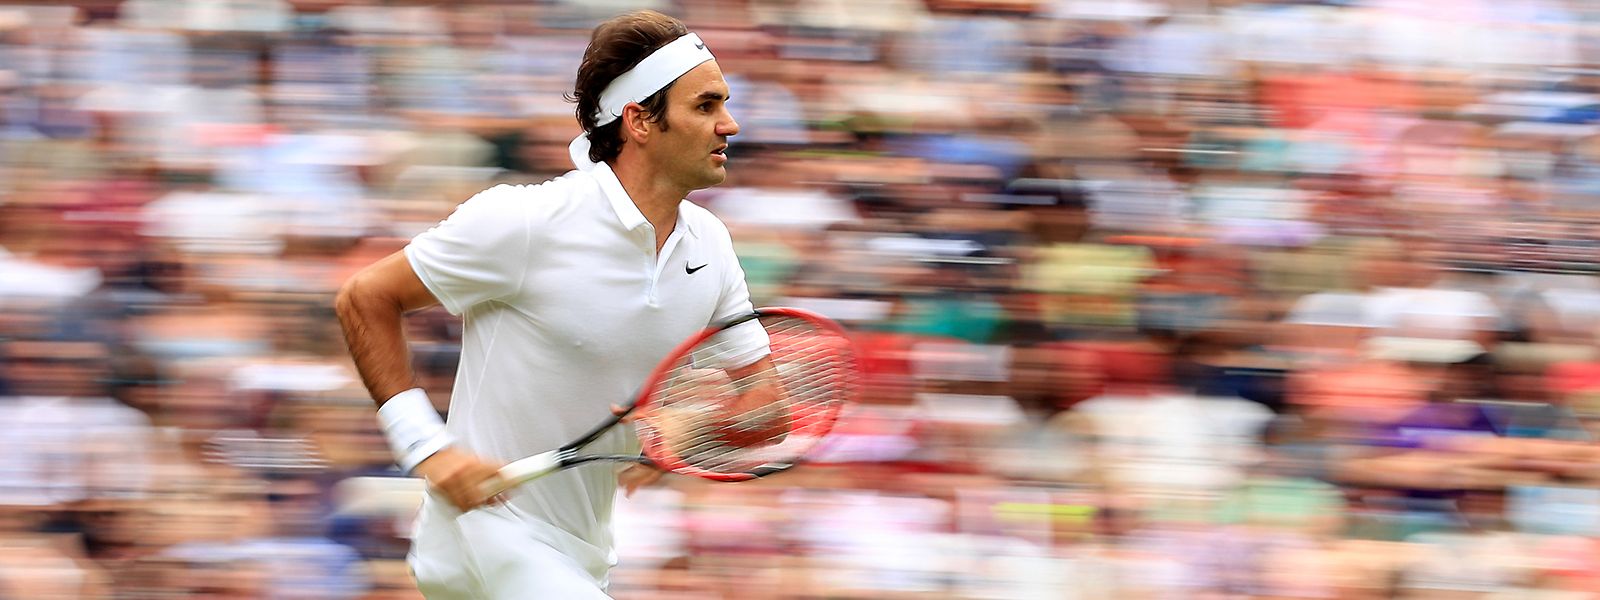 Roger Federer ist für viele der beste Tennisspieler der Geschichte.